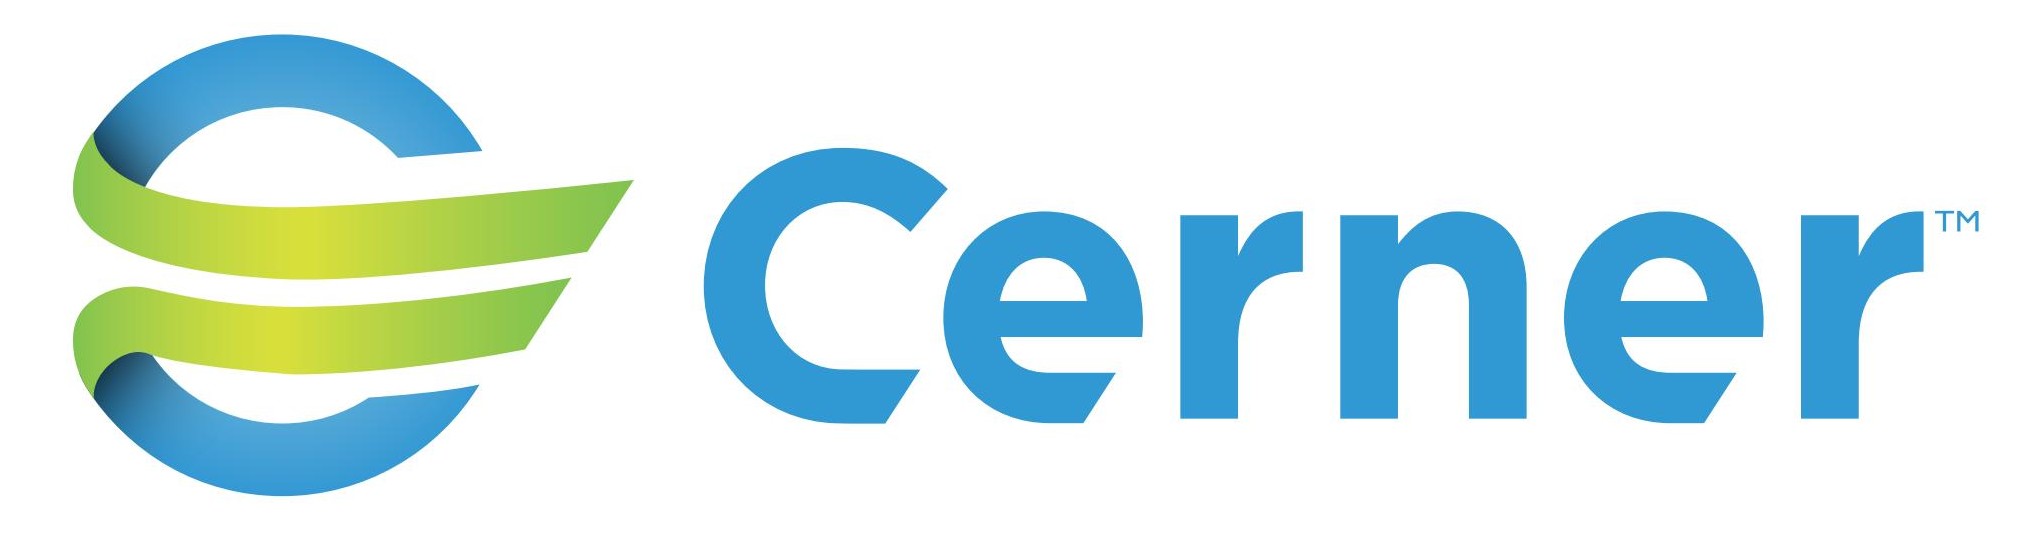 Cerner Brand Logo